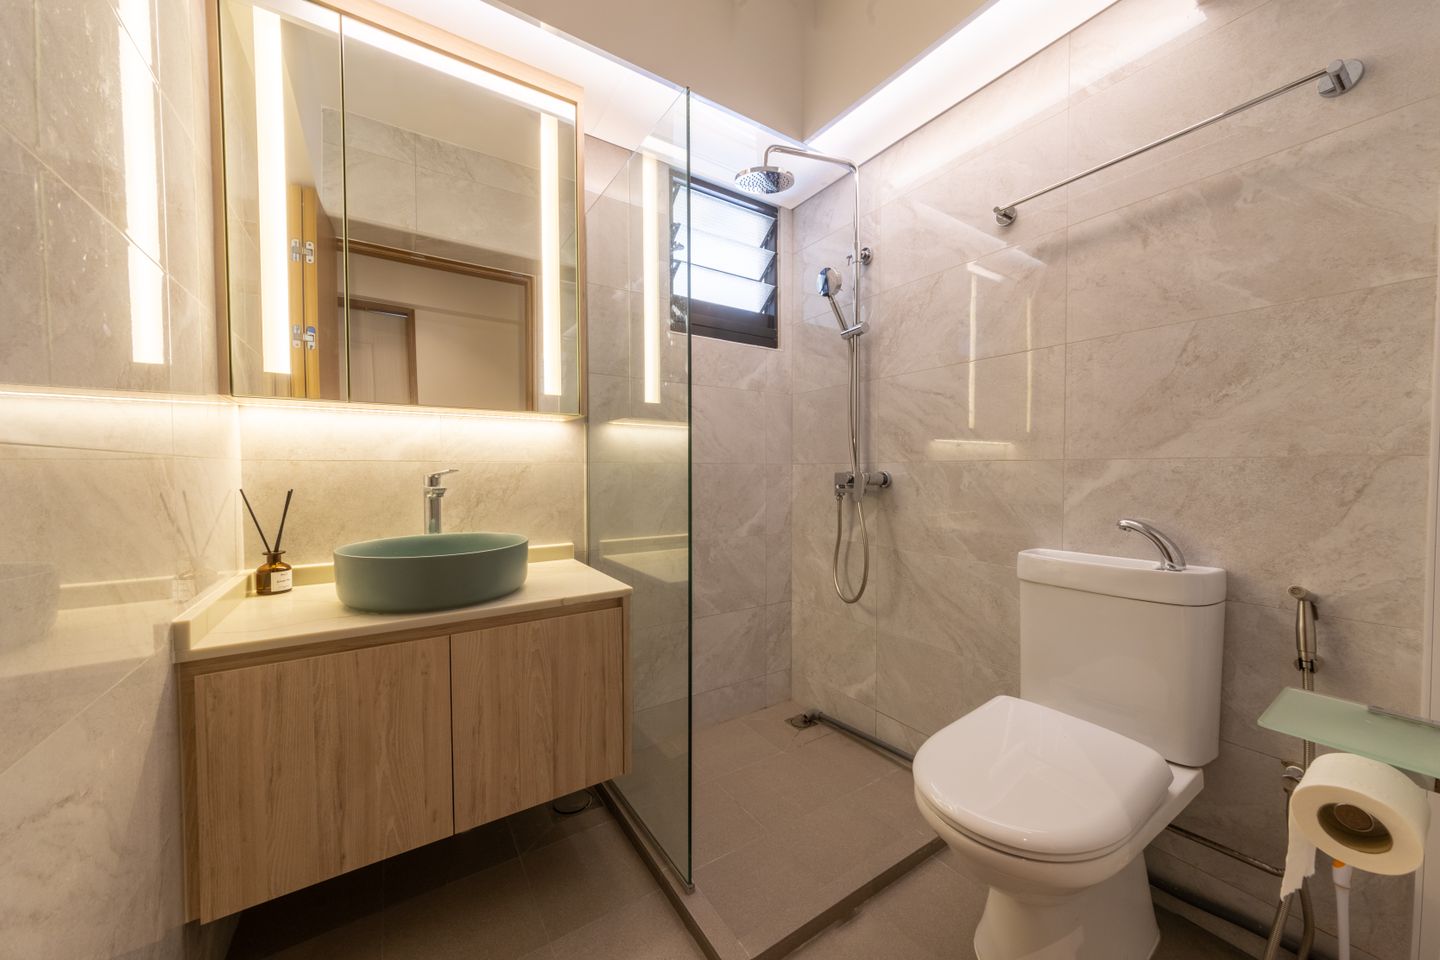 Minimalist Interior Design For Small Bathrooms - Livsapce